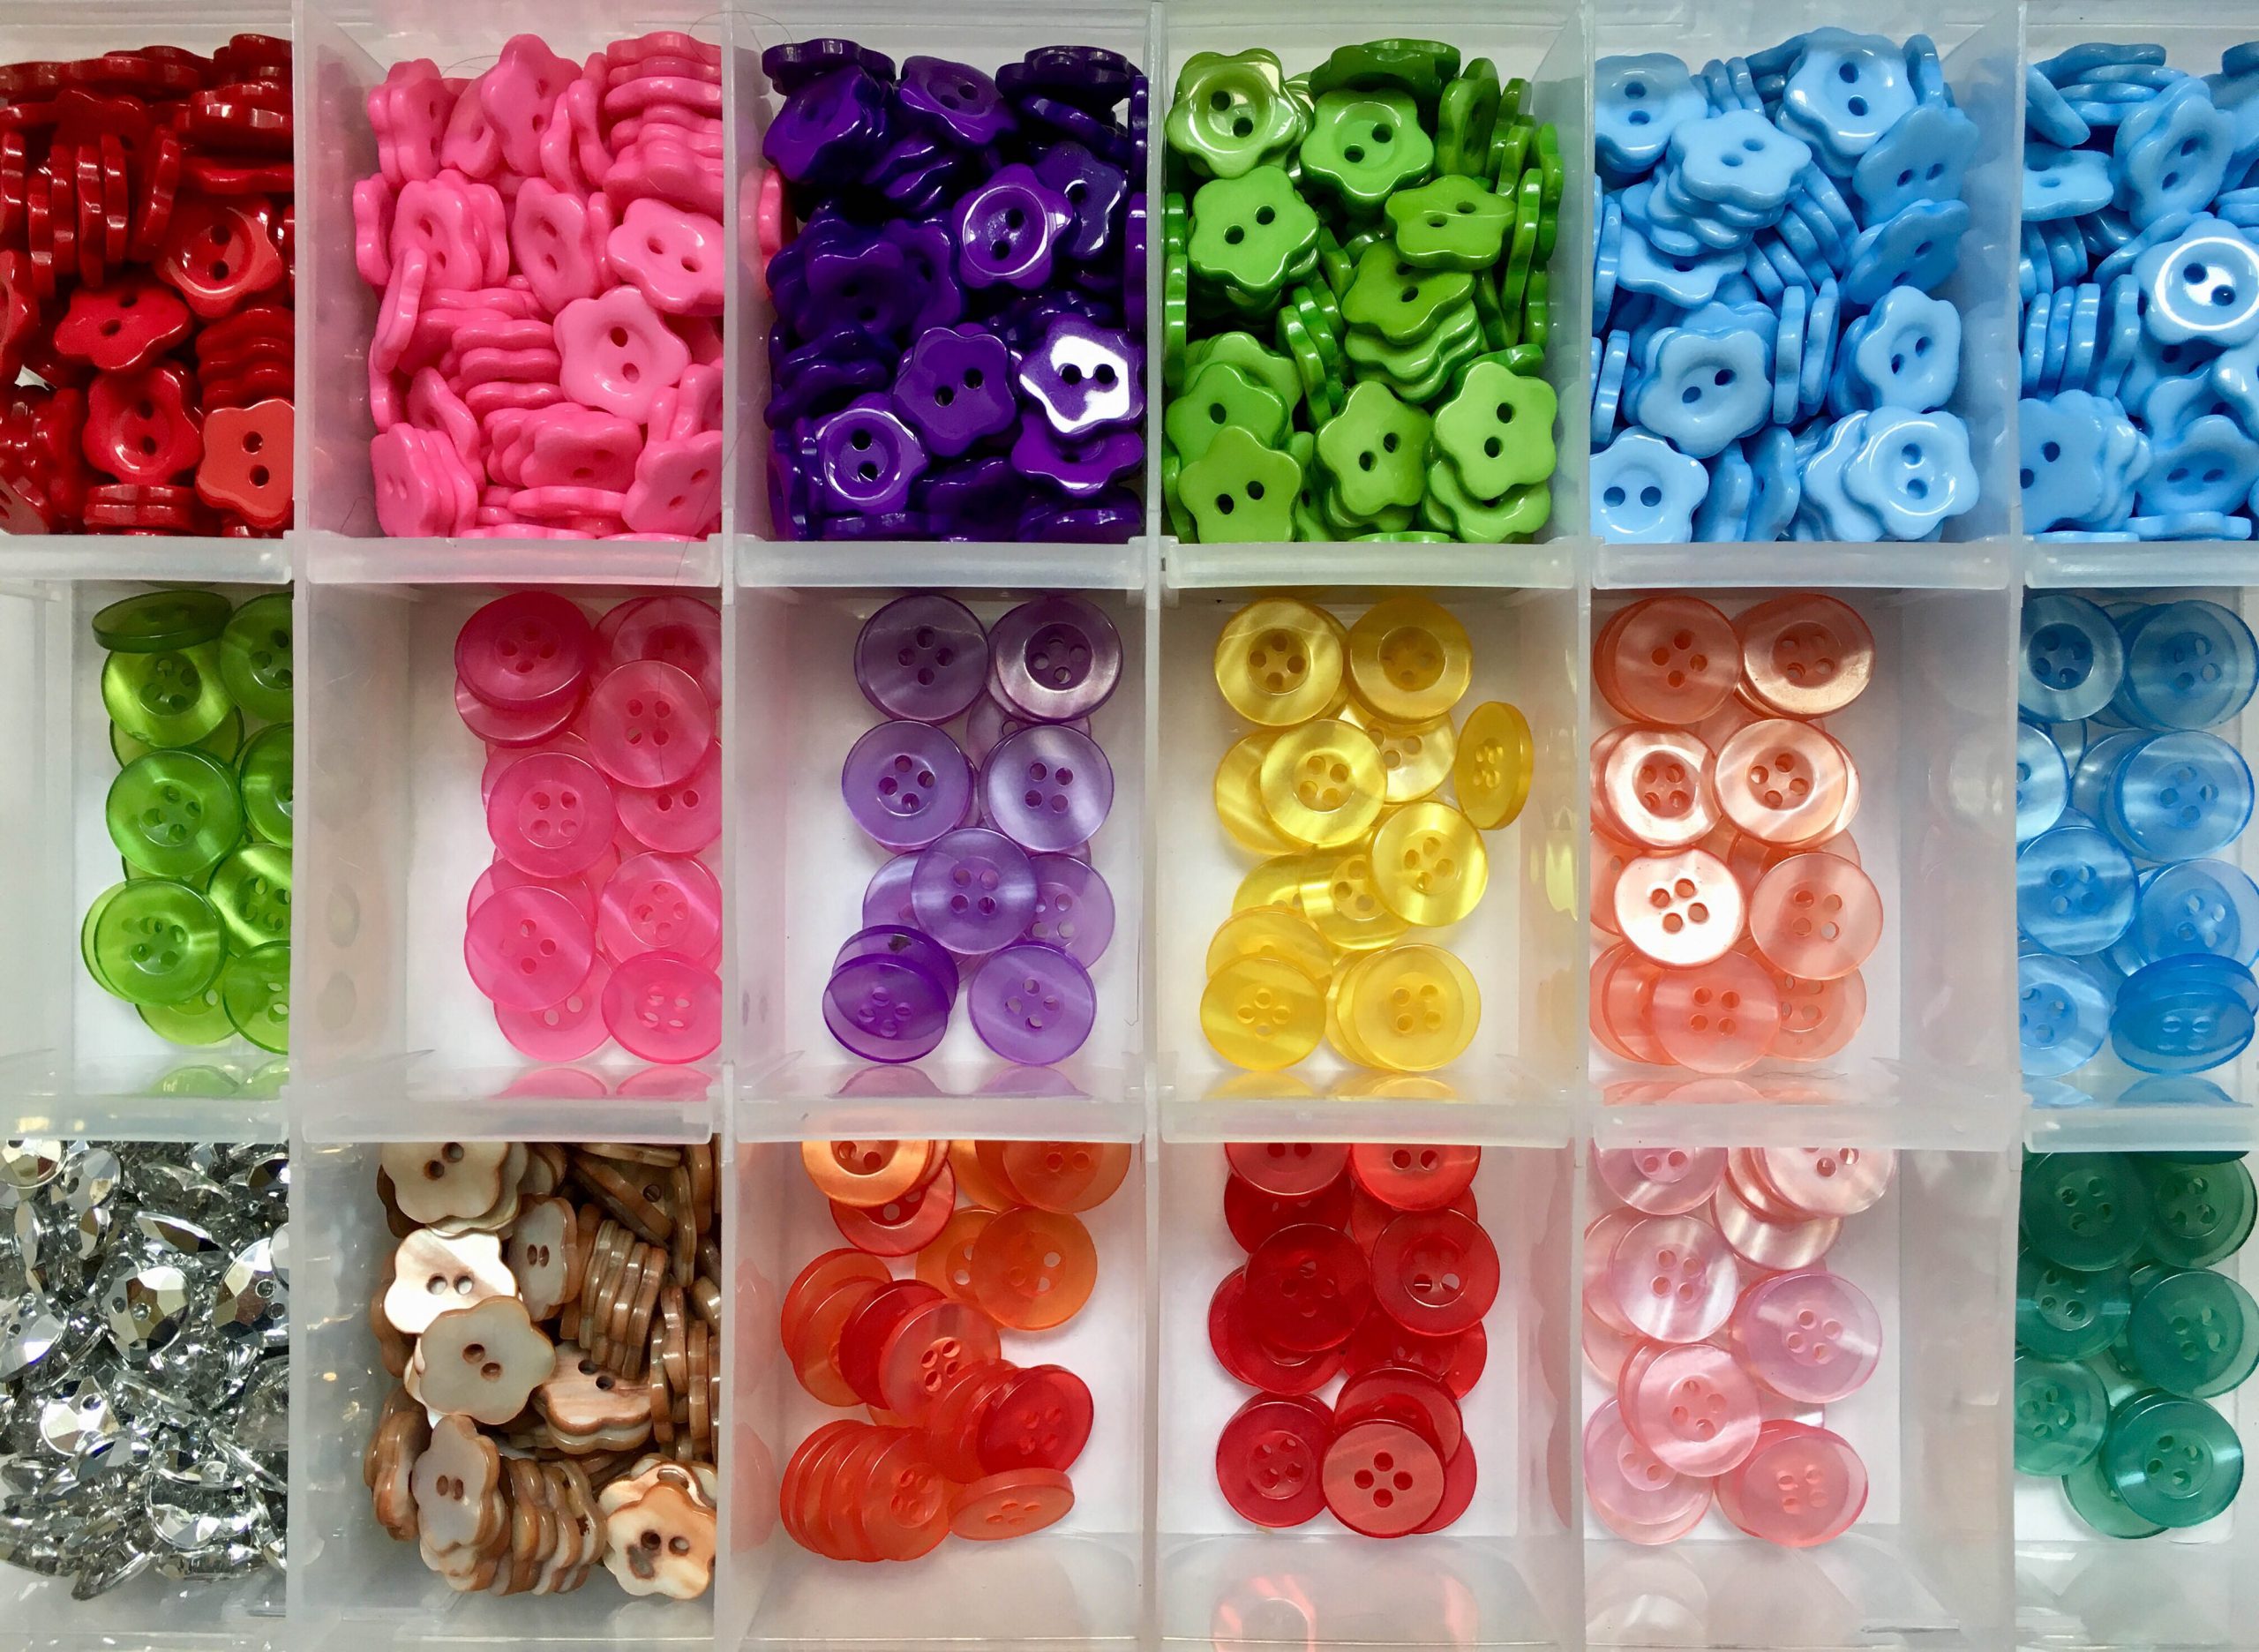 .קופסת פלסטיק עם כפתורים מסוגים שונים. בקופסה 18 תאים זהים ובכל תא מונחים כפתורים מאותו סוג